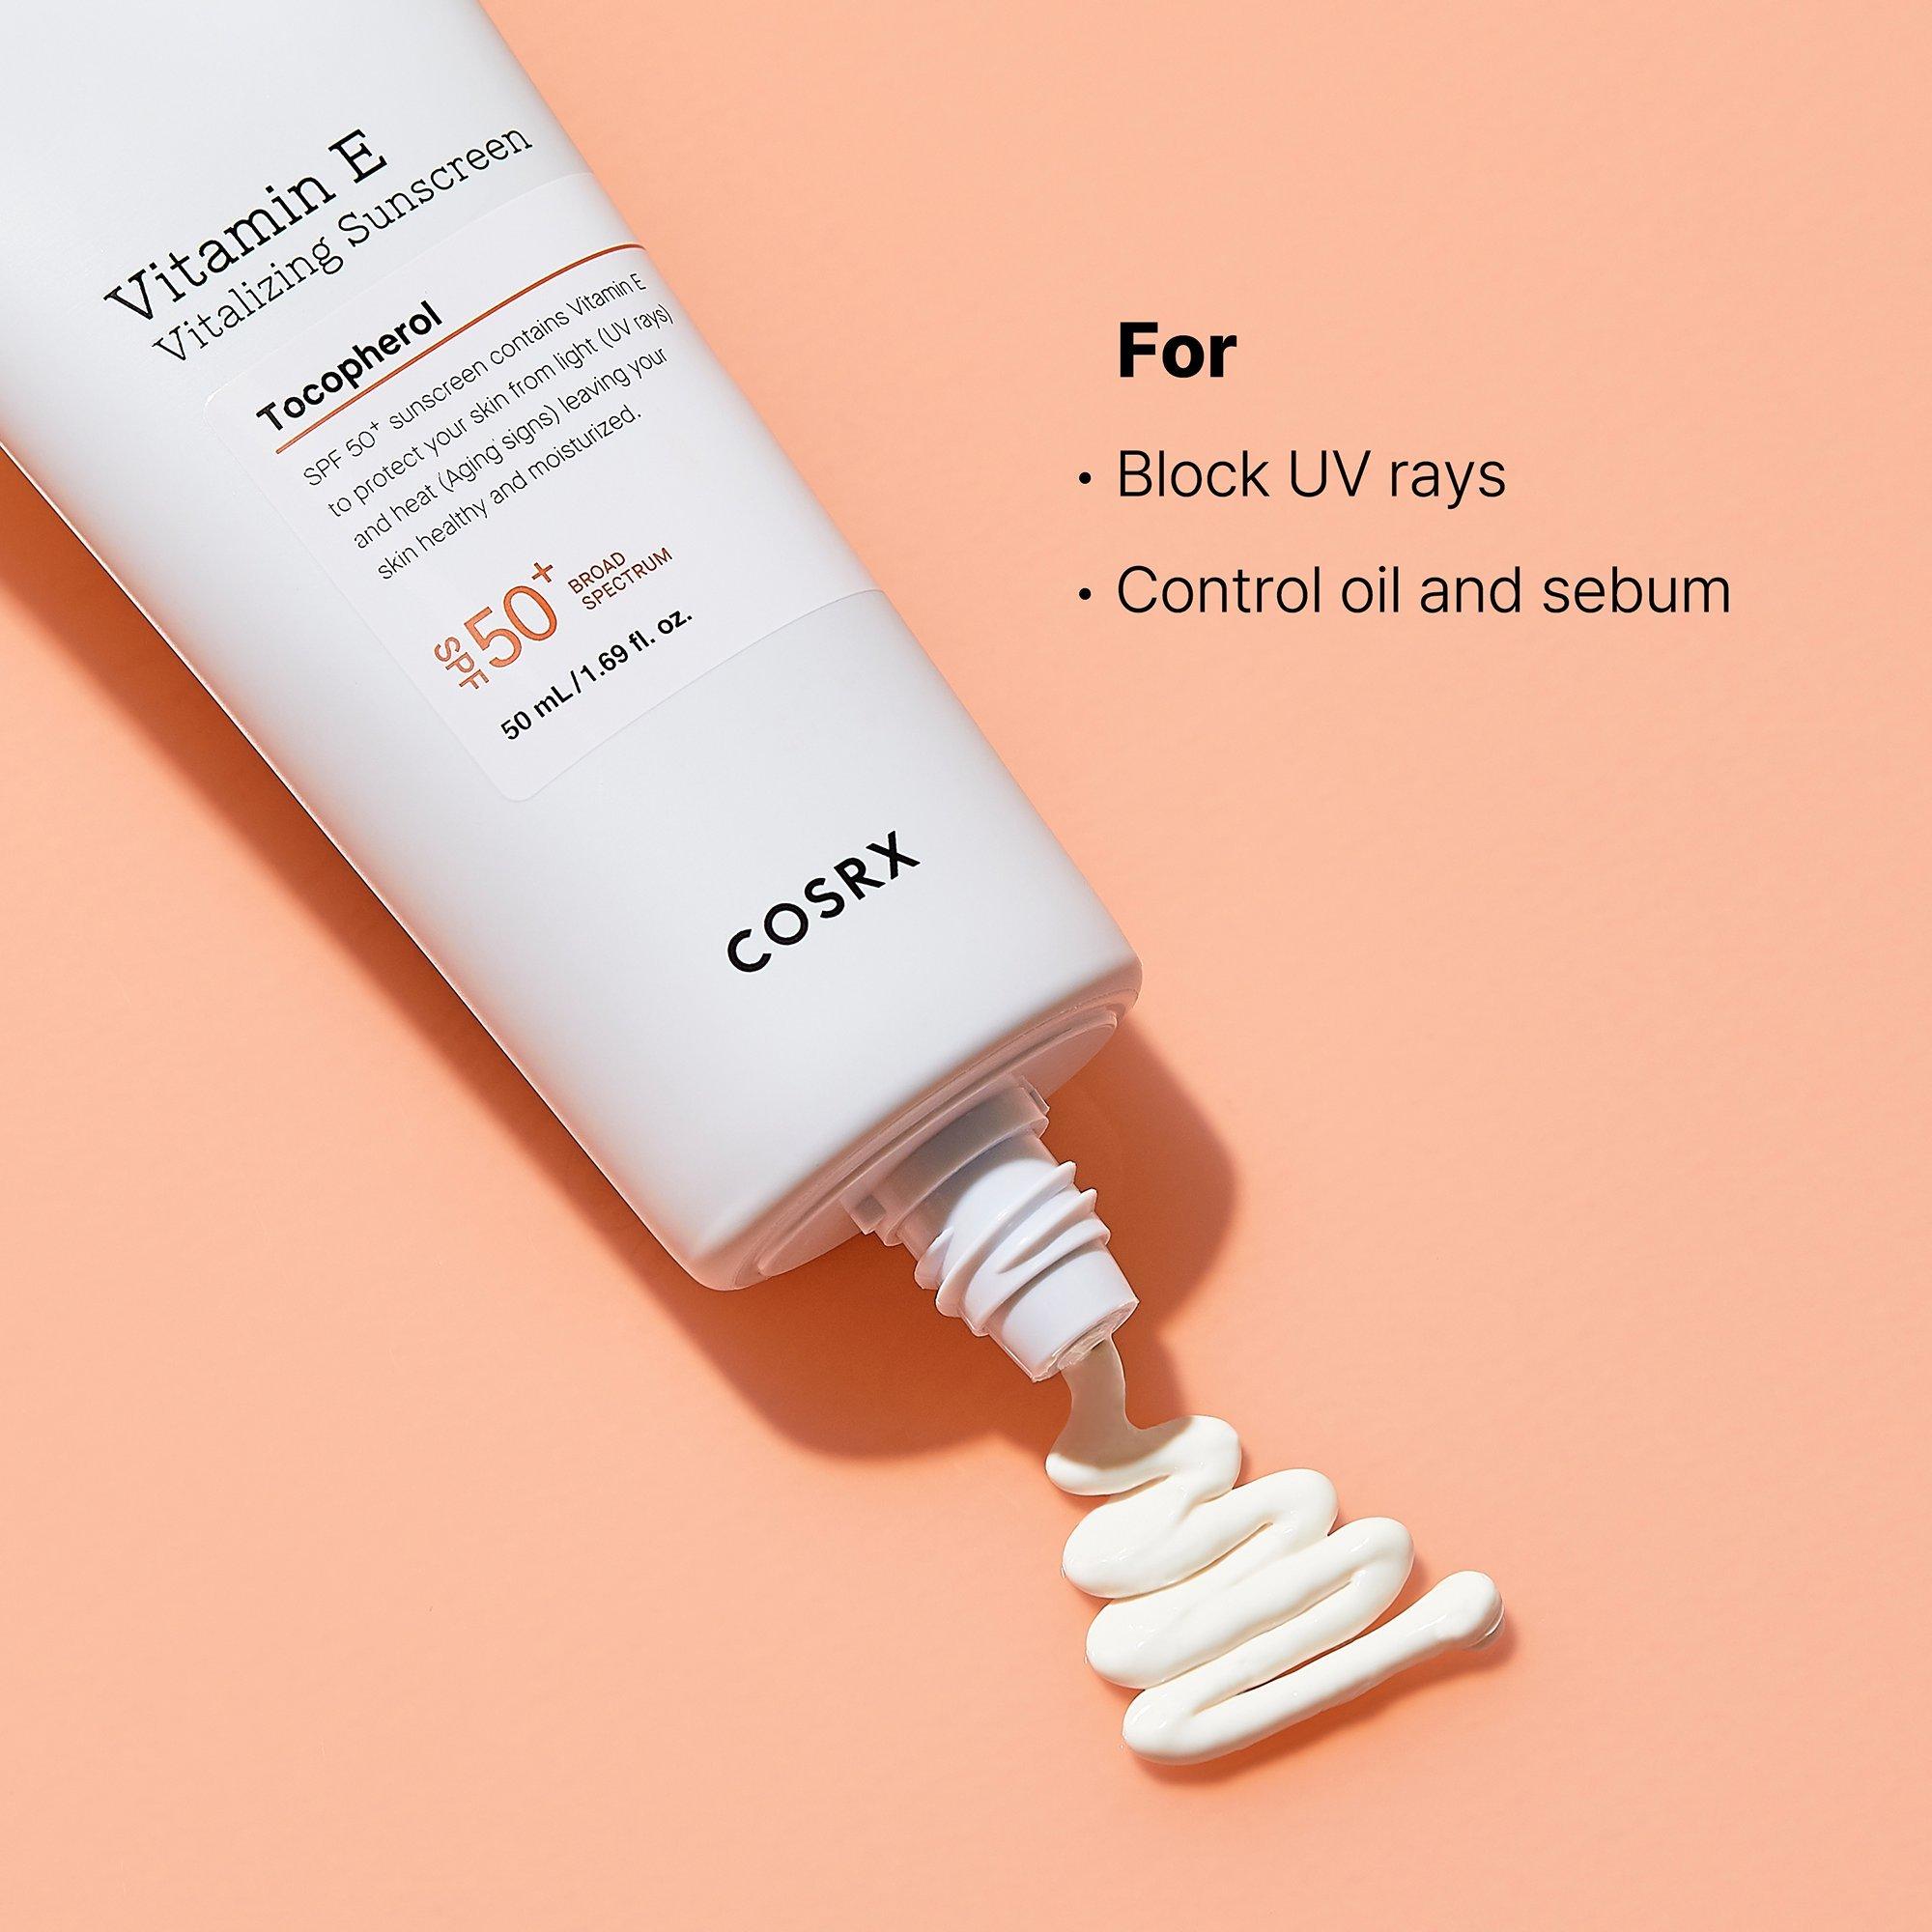 COSRX Vitamin E Vitalizing Sunscreen SPF 50+ / 1.6OZ